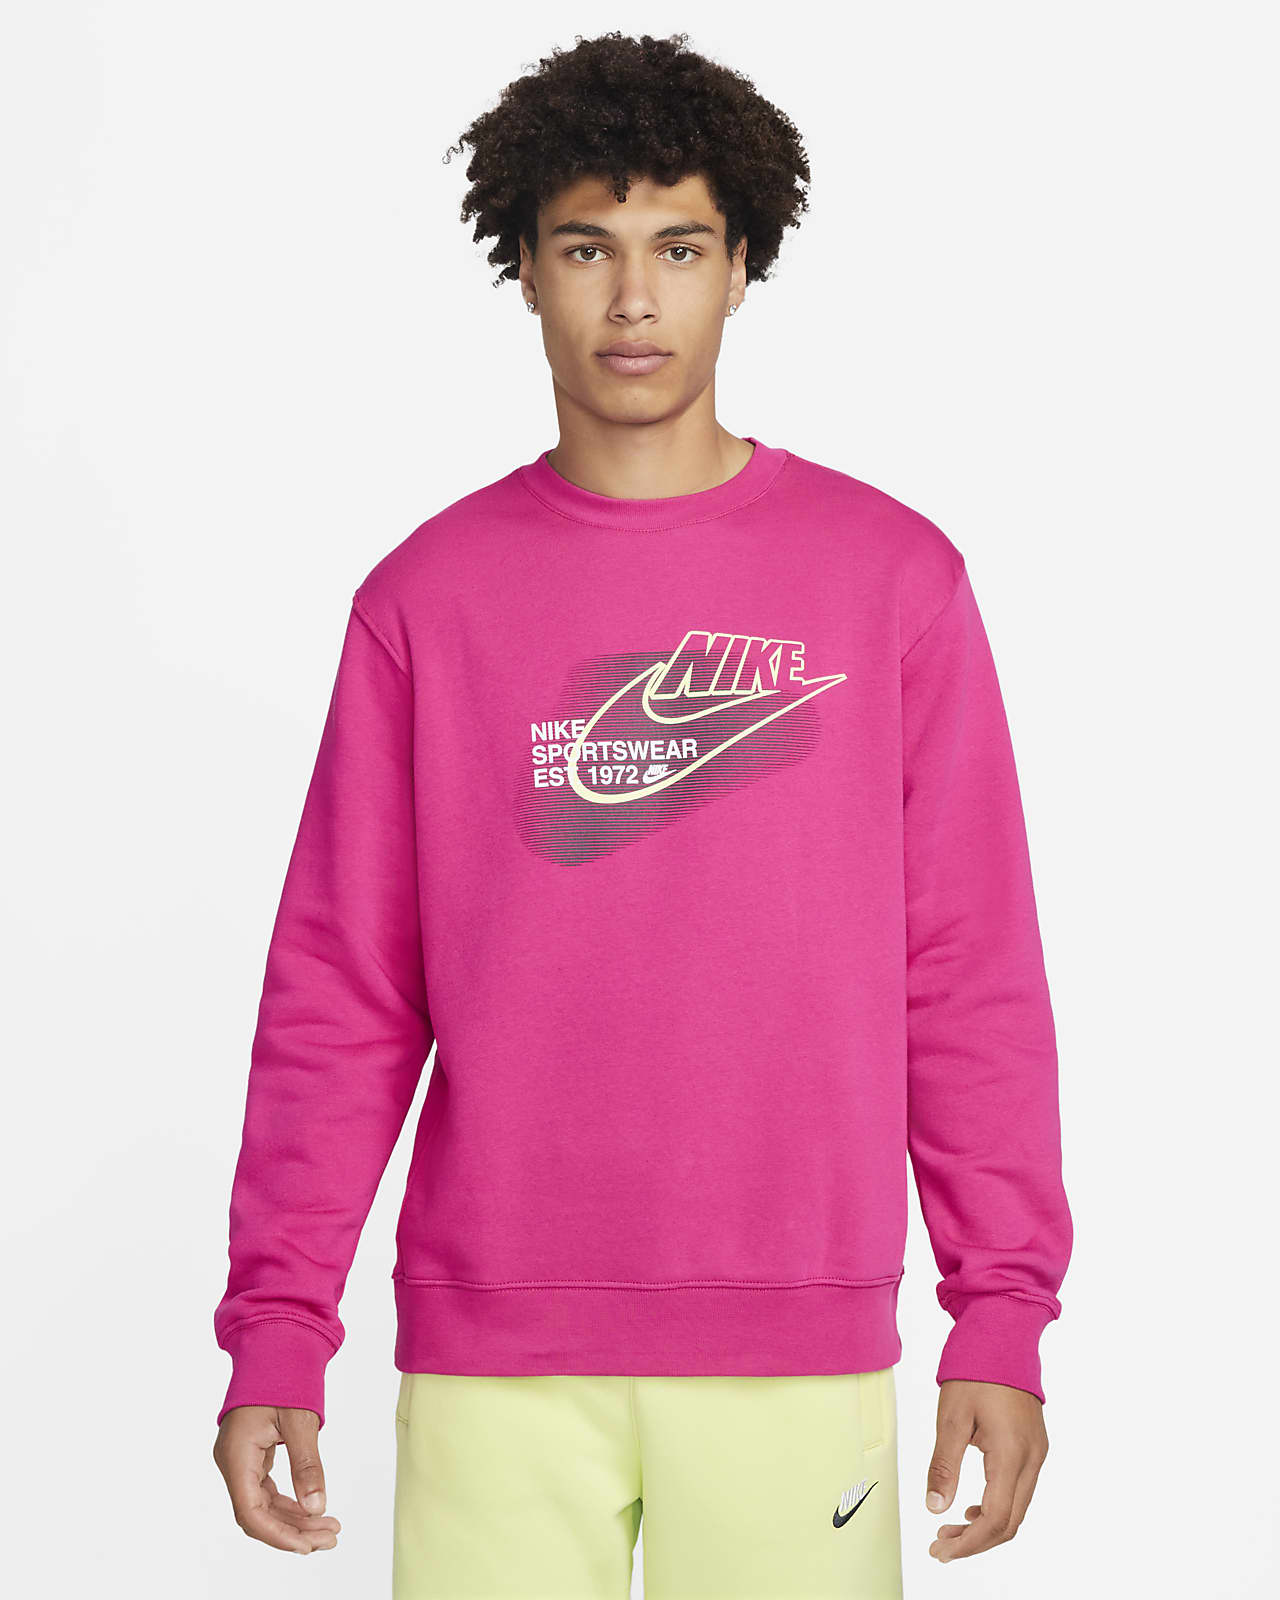 Nike Sportswear Standard Issue Men's Sweatshirt